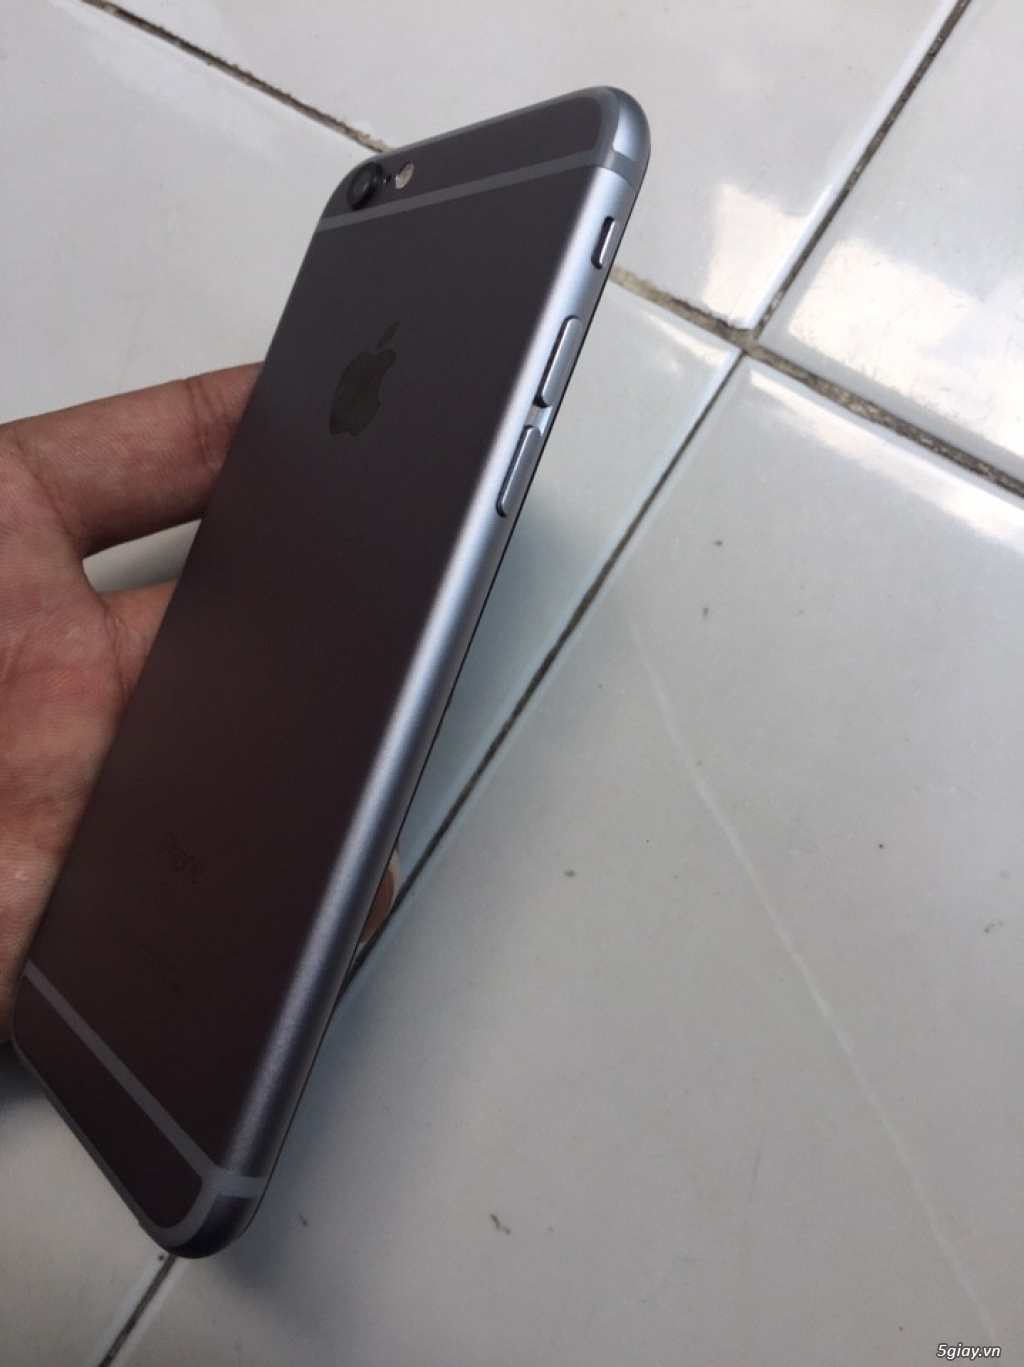 Cần bán Iphone 6s 16gb màu gray qte